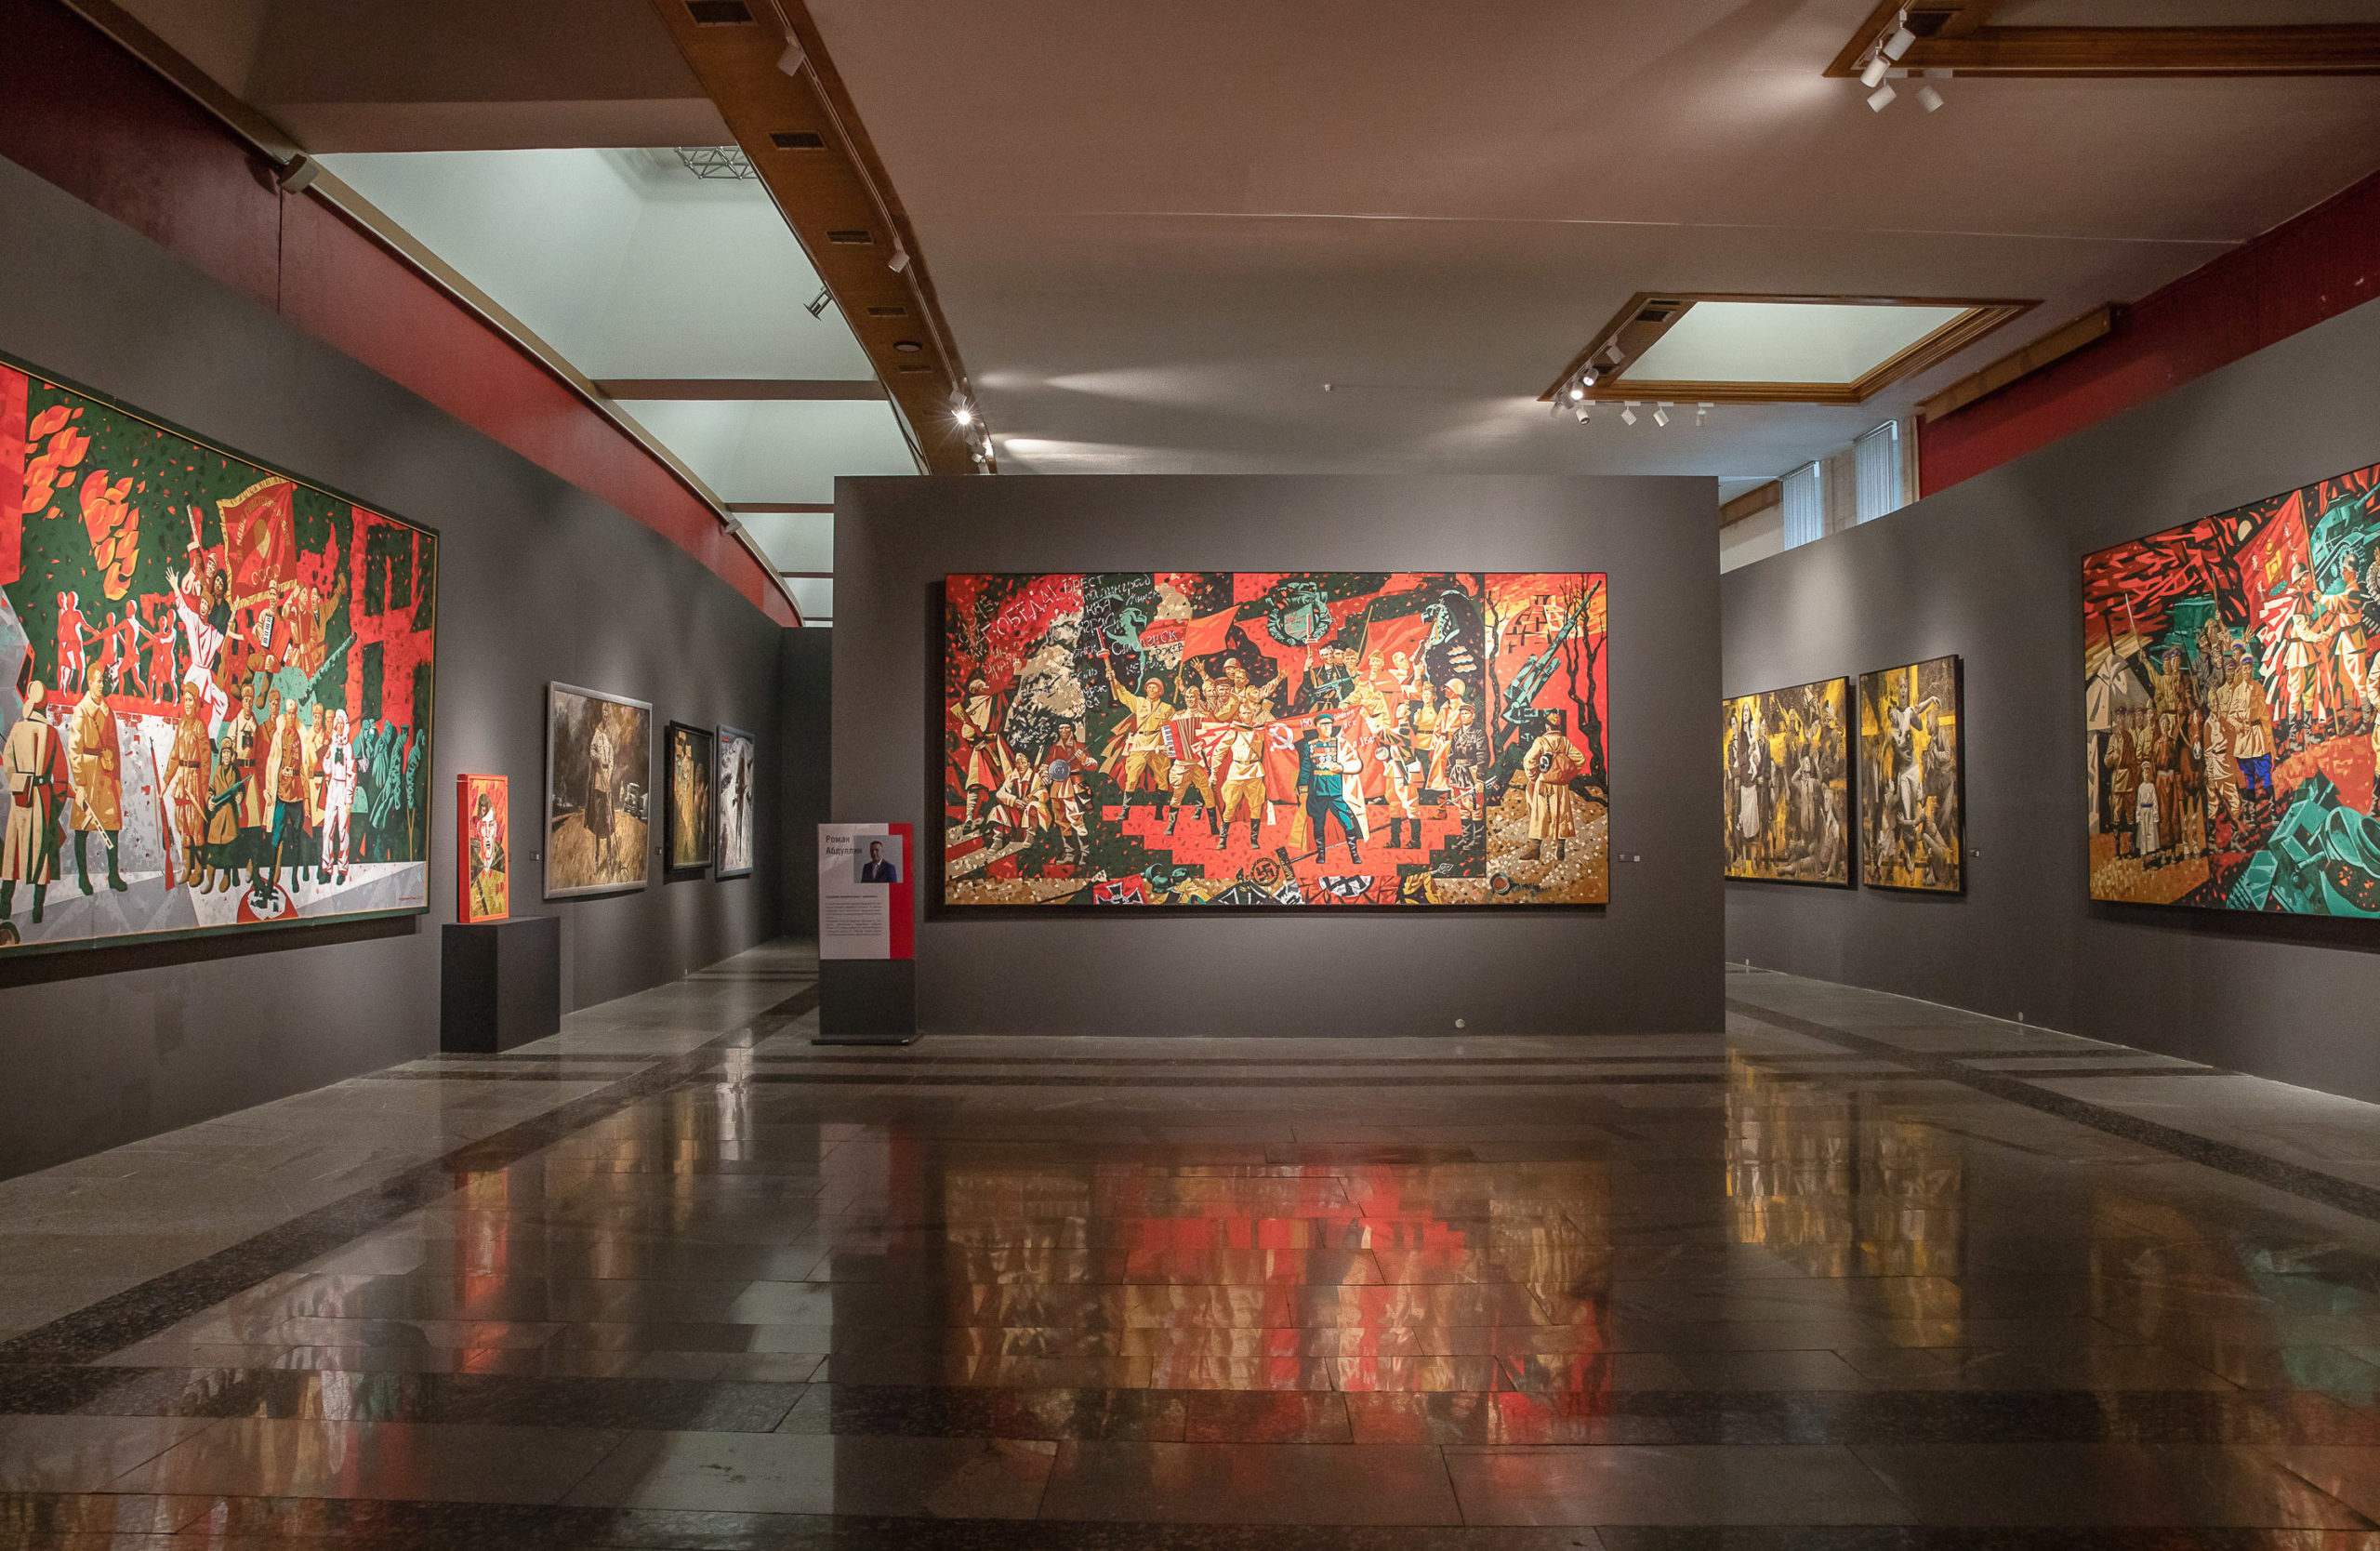 Монументальная художественная выставка Музея покорила сердца